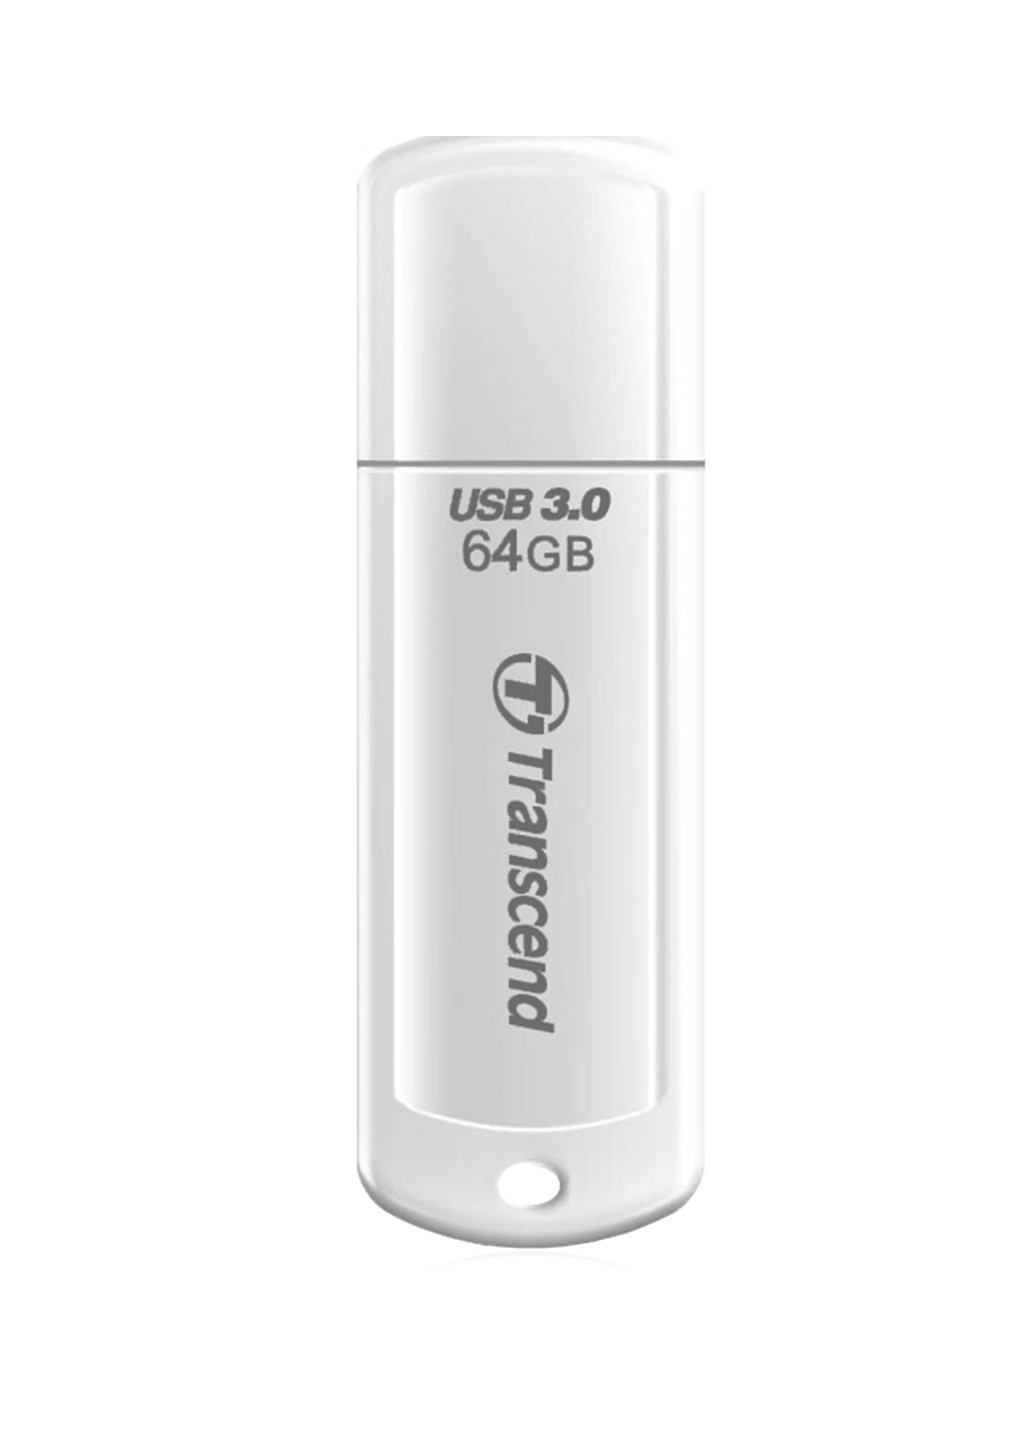 Флеш память USB JetFlash 730 64GB USB 3.0 White (TS64GJF730) Transcend флеш память usb transcend jetflash 730 64gb usb 3.0 white (ts64gjf730) (135165477)